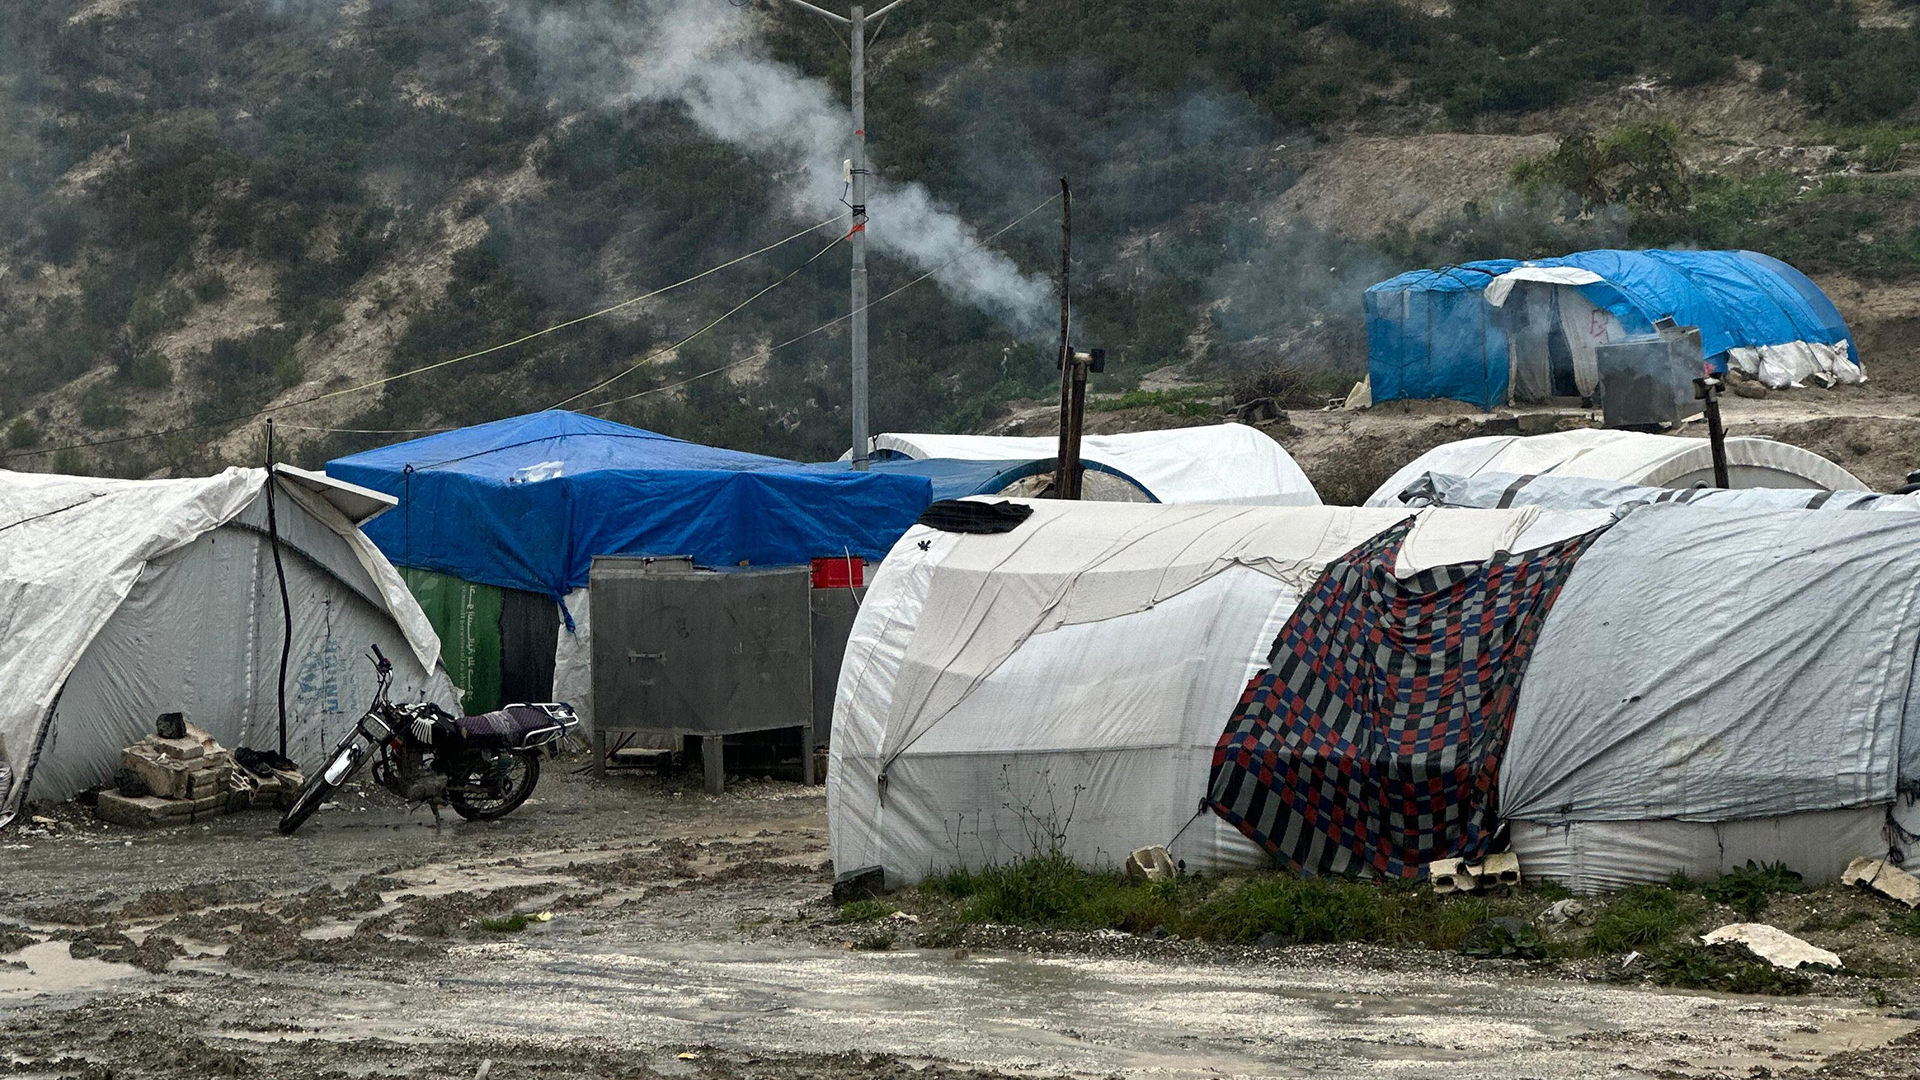 فيديو.. “العاصي” يفيض على مخيمات النازحين بريف إدلب والدفاع المدني يستنفر | سياسة – البوكس نيوز